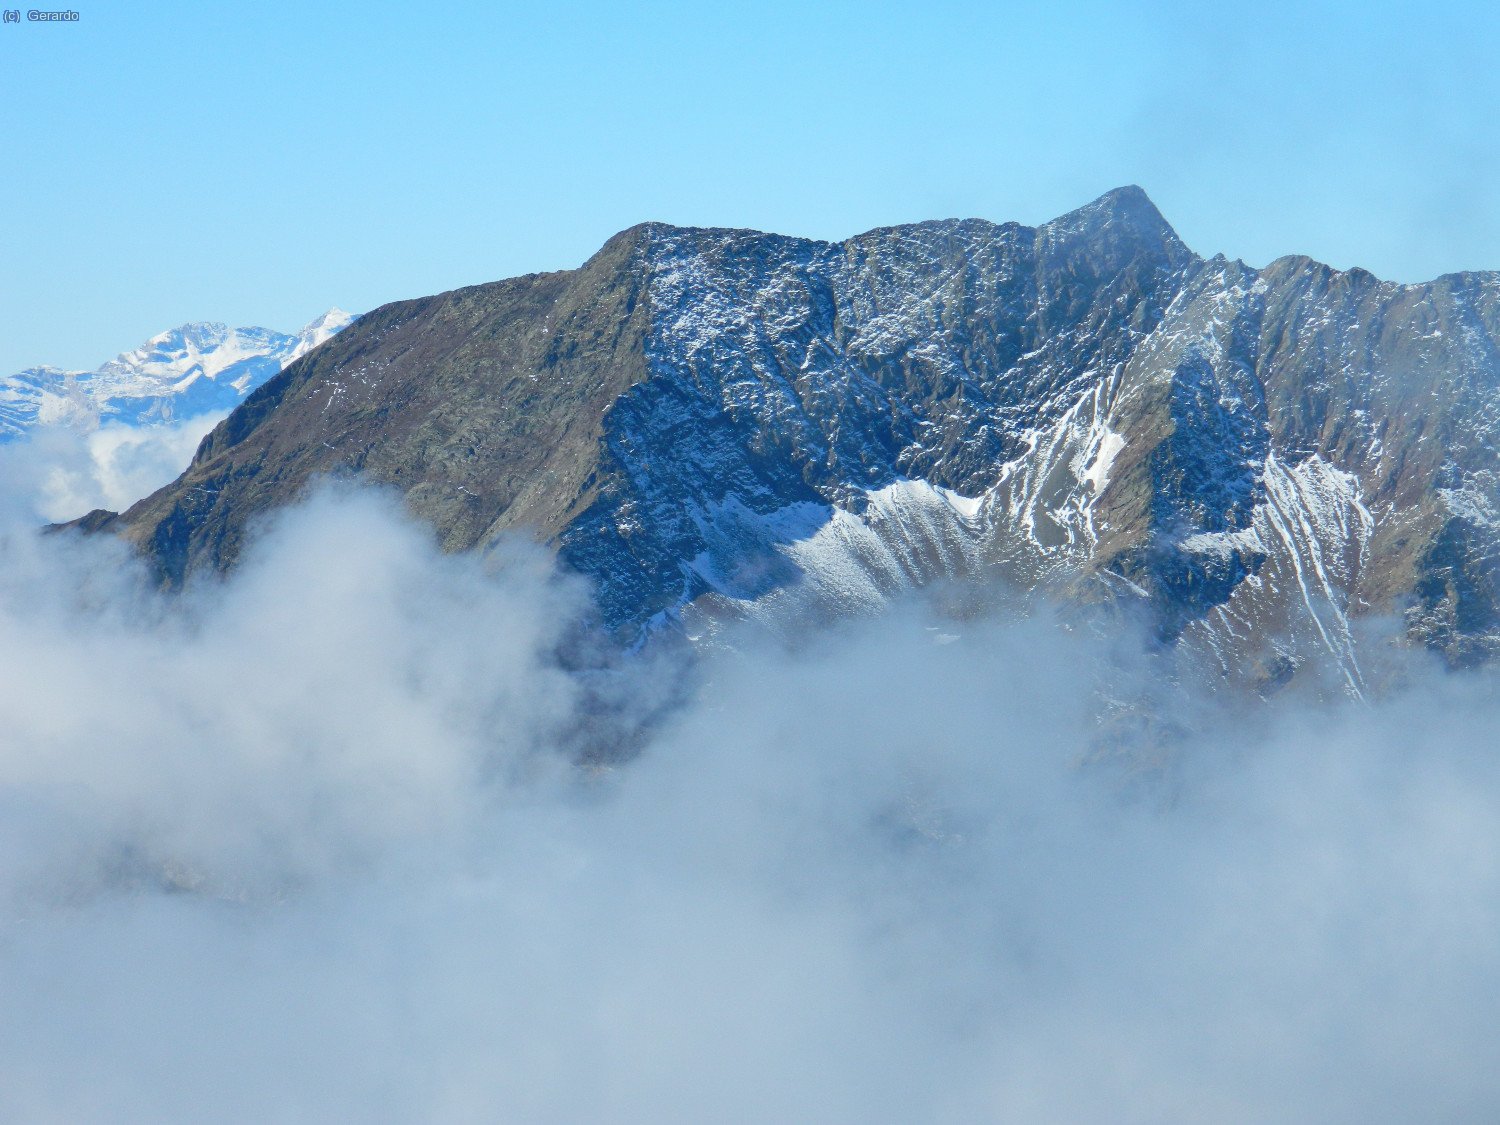 Detalle de Bachimala, con un espolvoreado Monte Perdido al fondo a la izquierda.